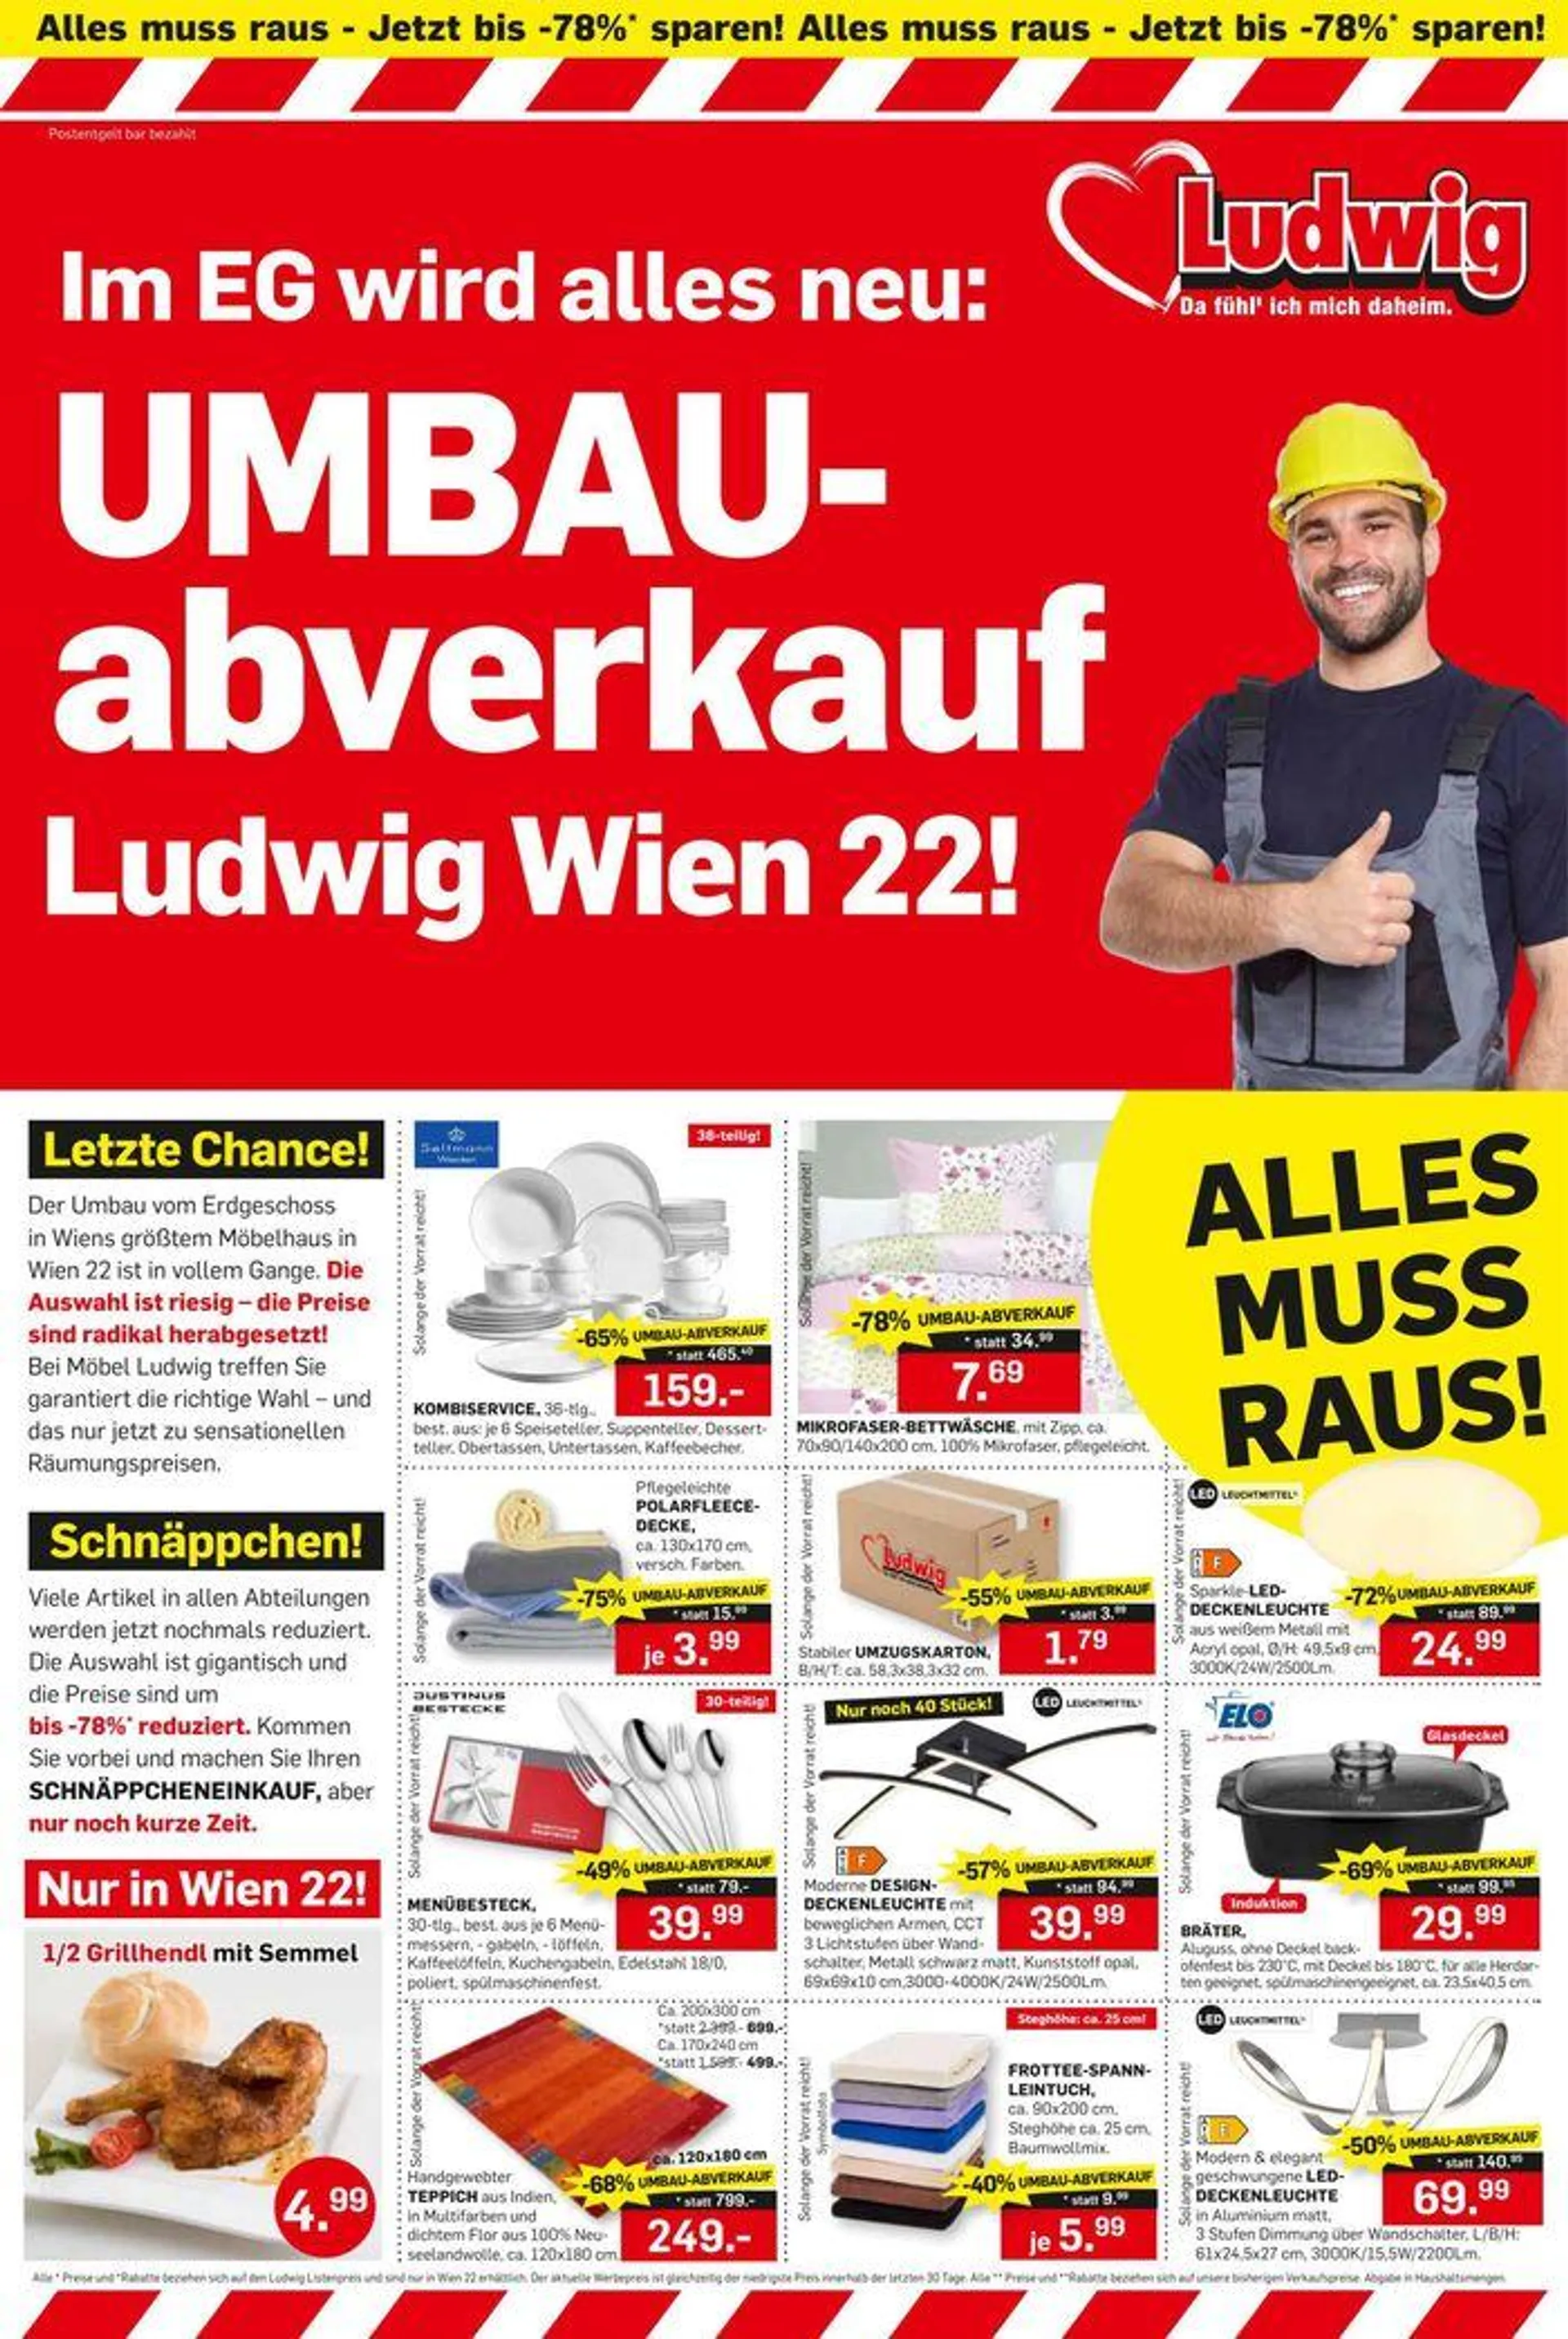 UMBAU-abverkauf Ludwig Wien 22! - 1